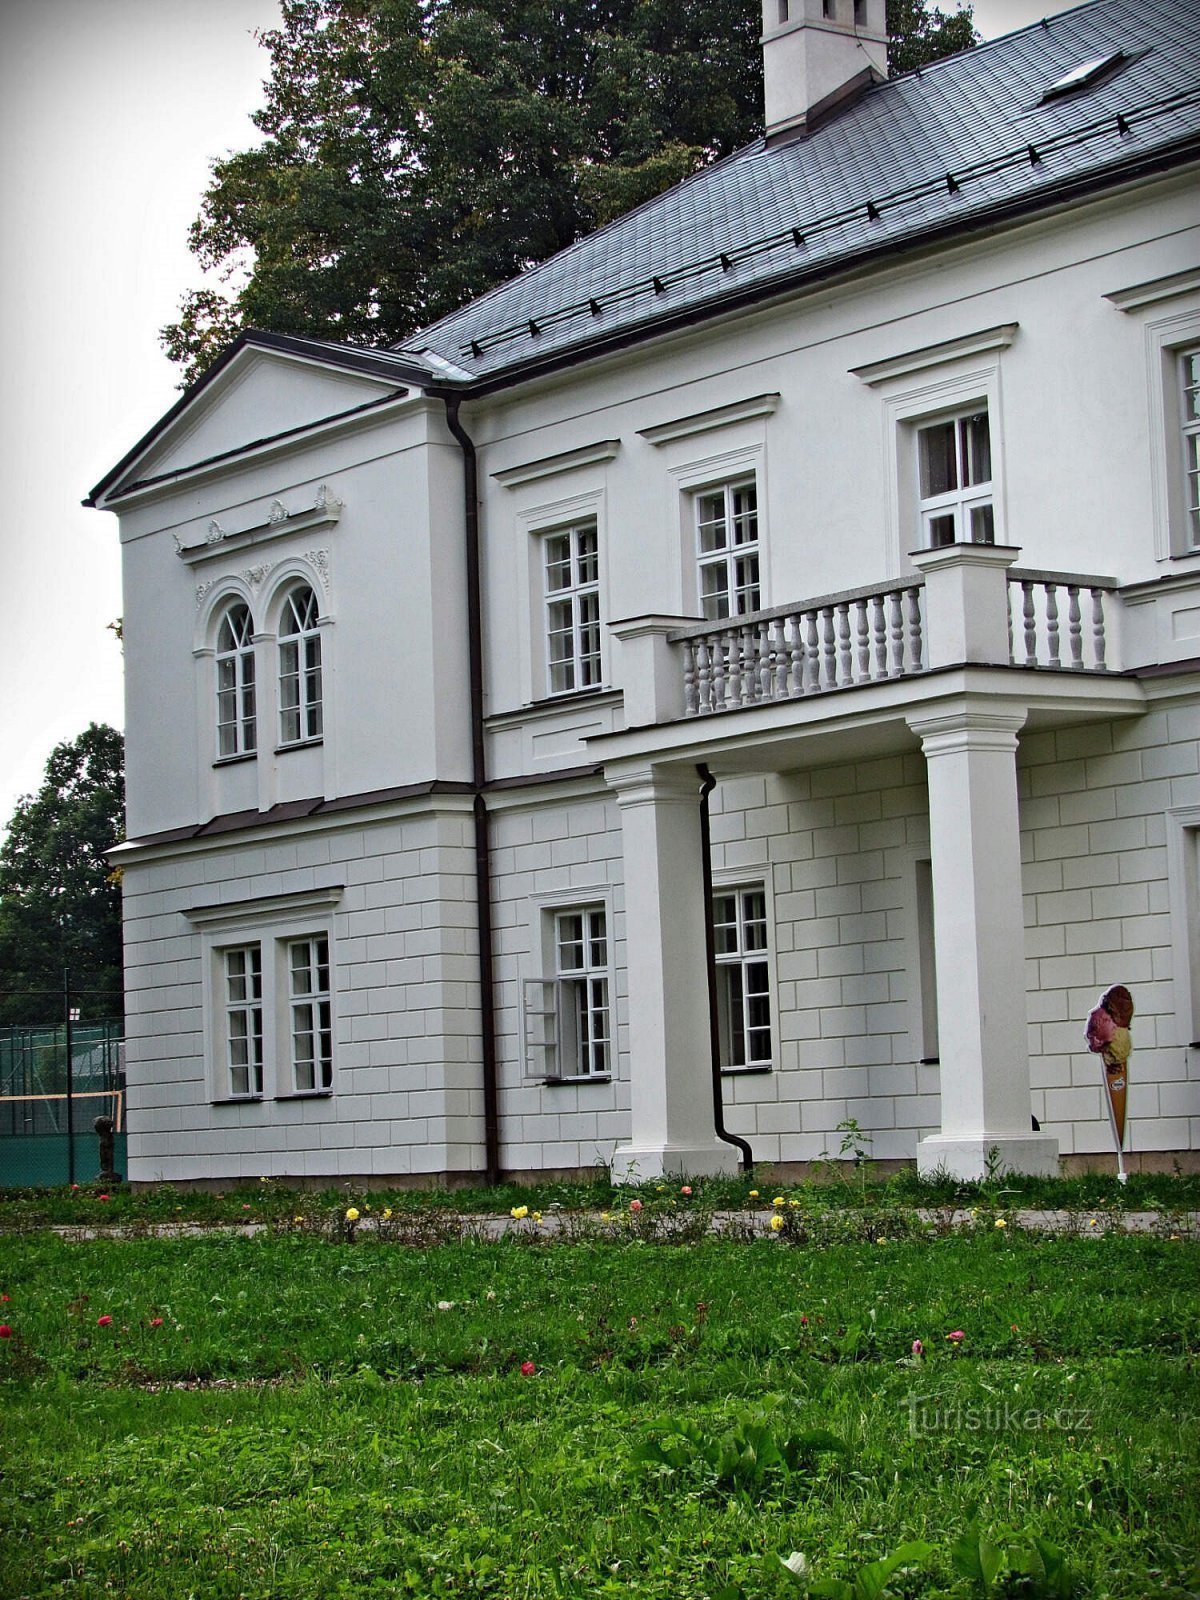 位于 Vsetín 附近 Hošťálková 的城堡